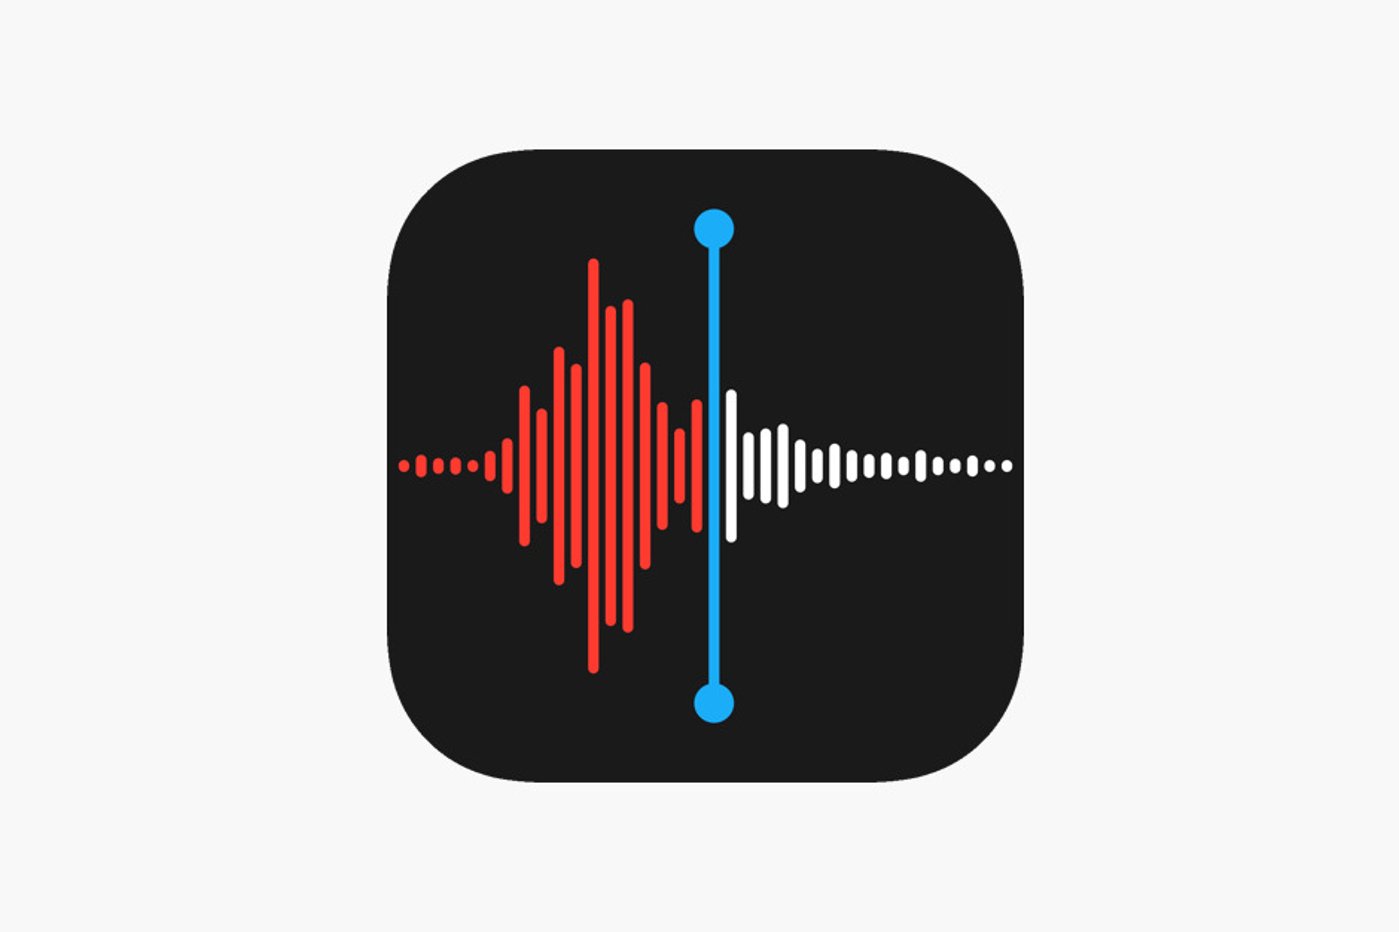 logo app dictaphone